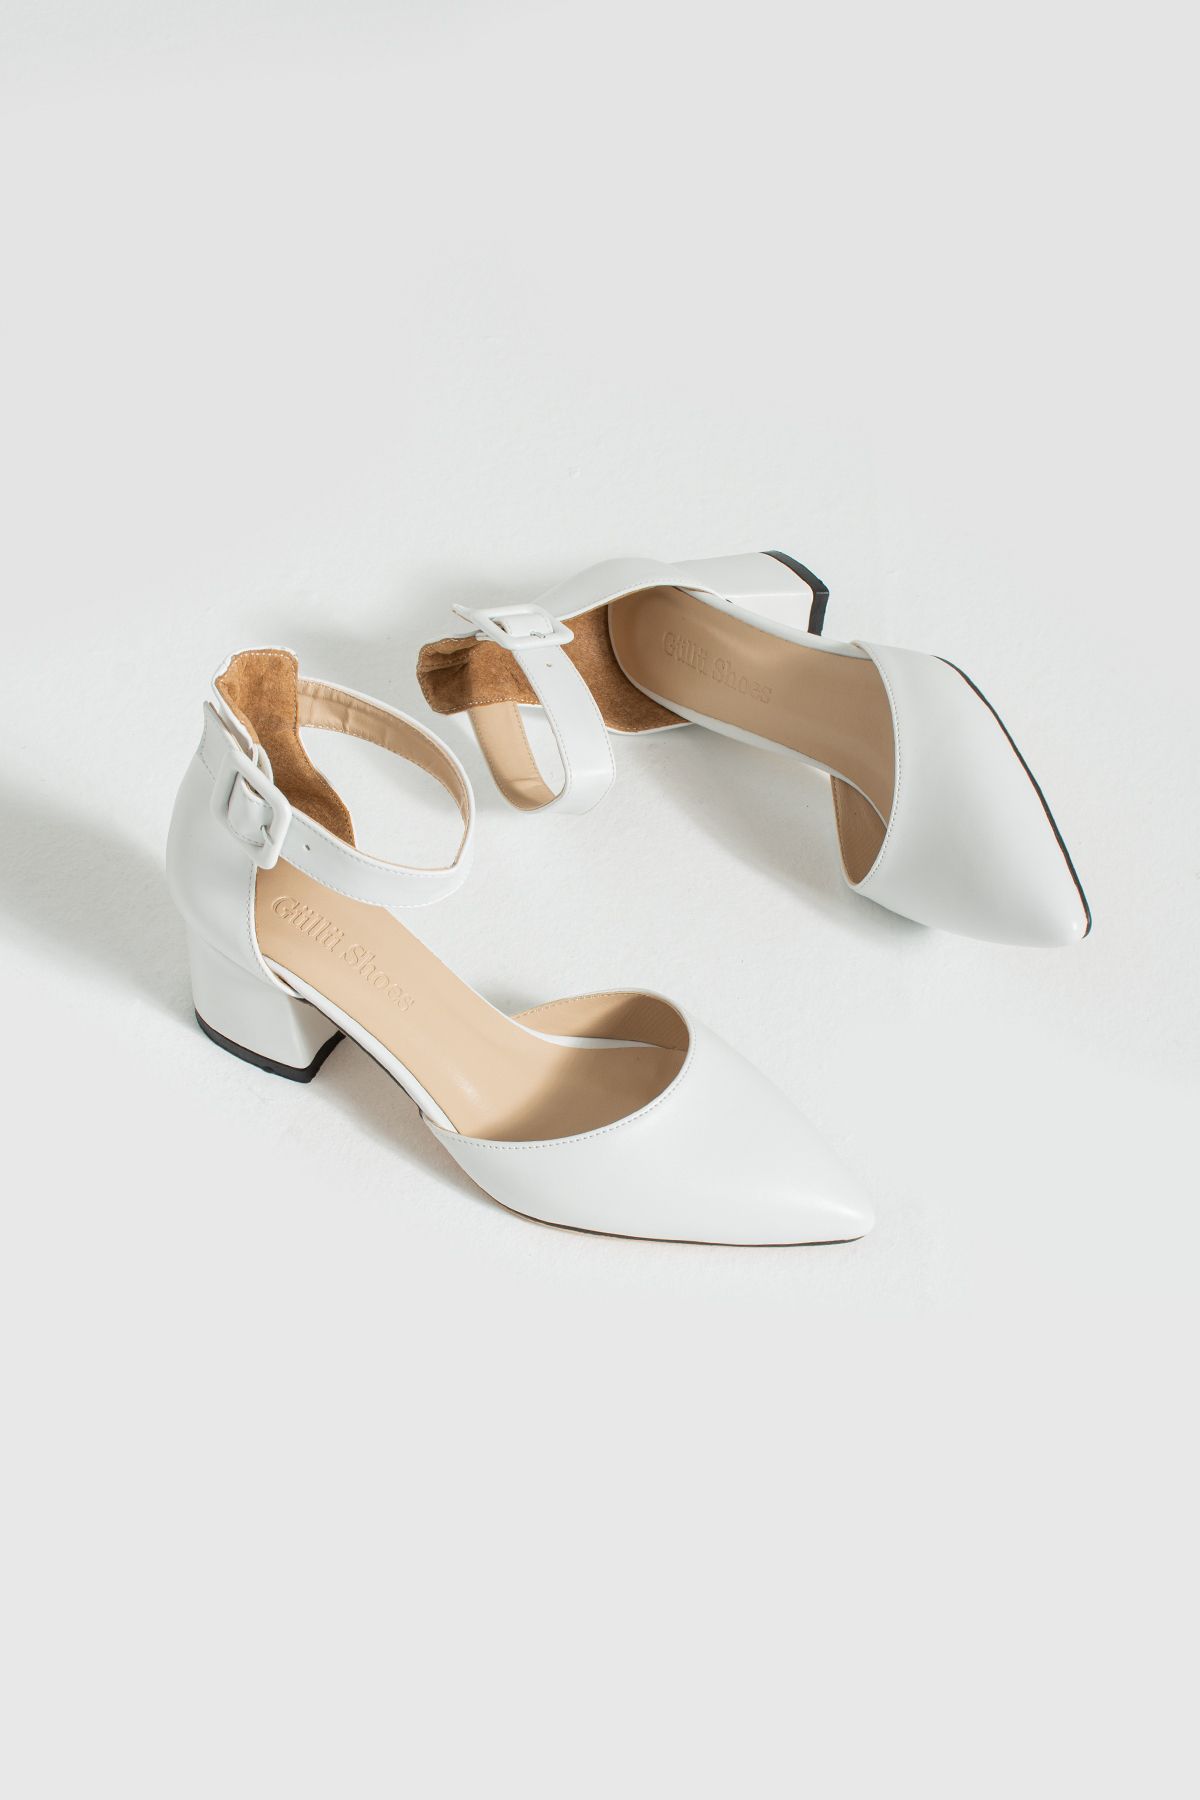 Güllü Shoes Kadin Beyaz Topuklu Ayakkabı Abiye Stiletto Kalın Topuk Gelinlik Ayakkabisi 5.5cm